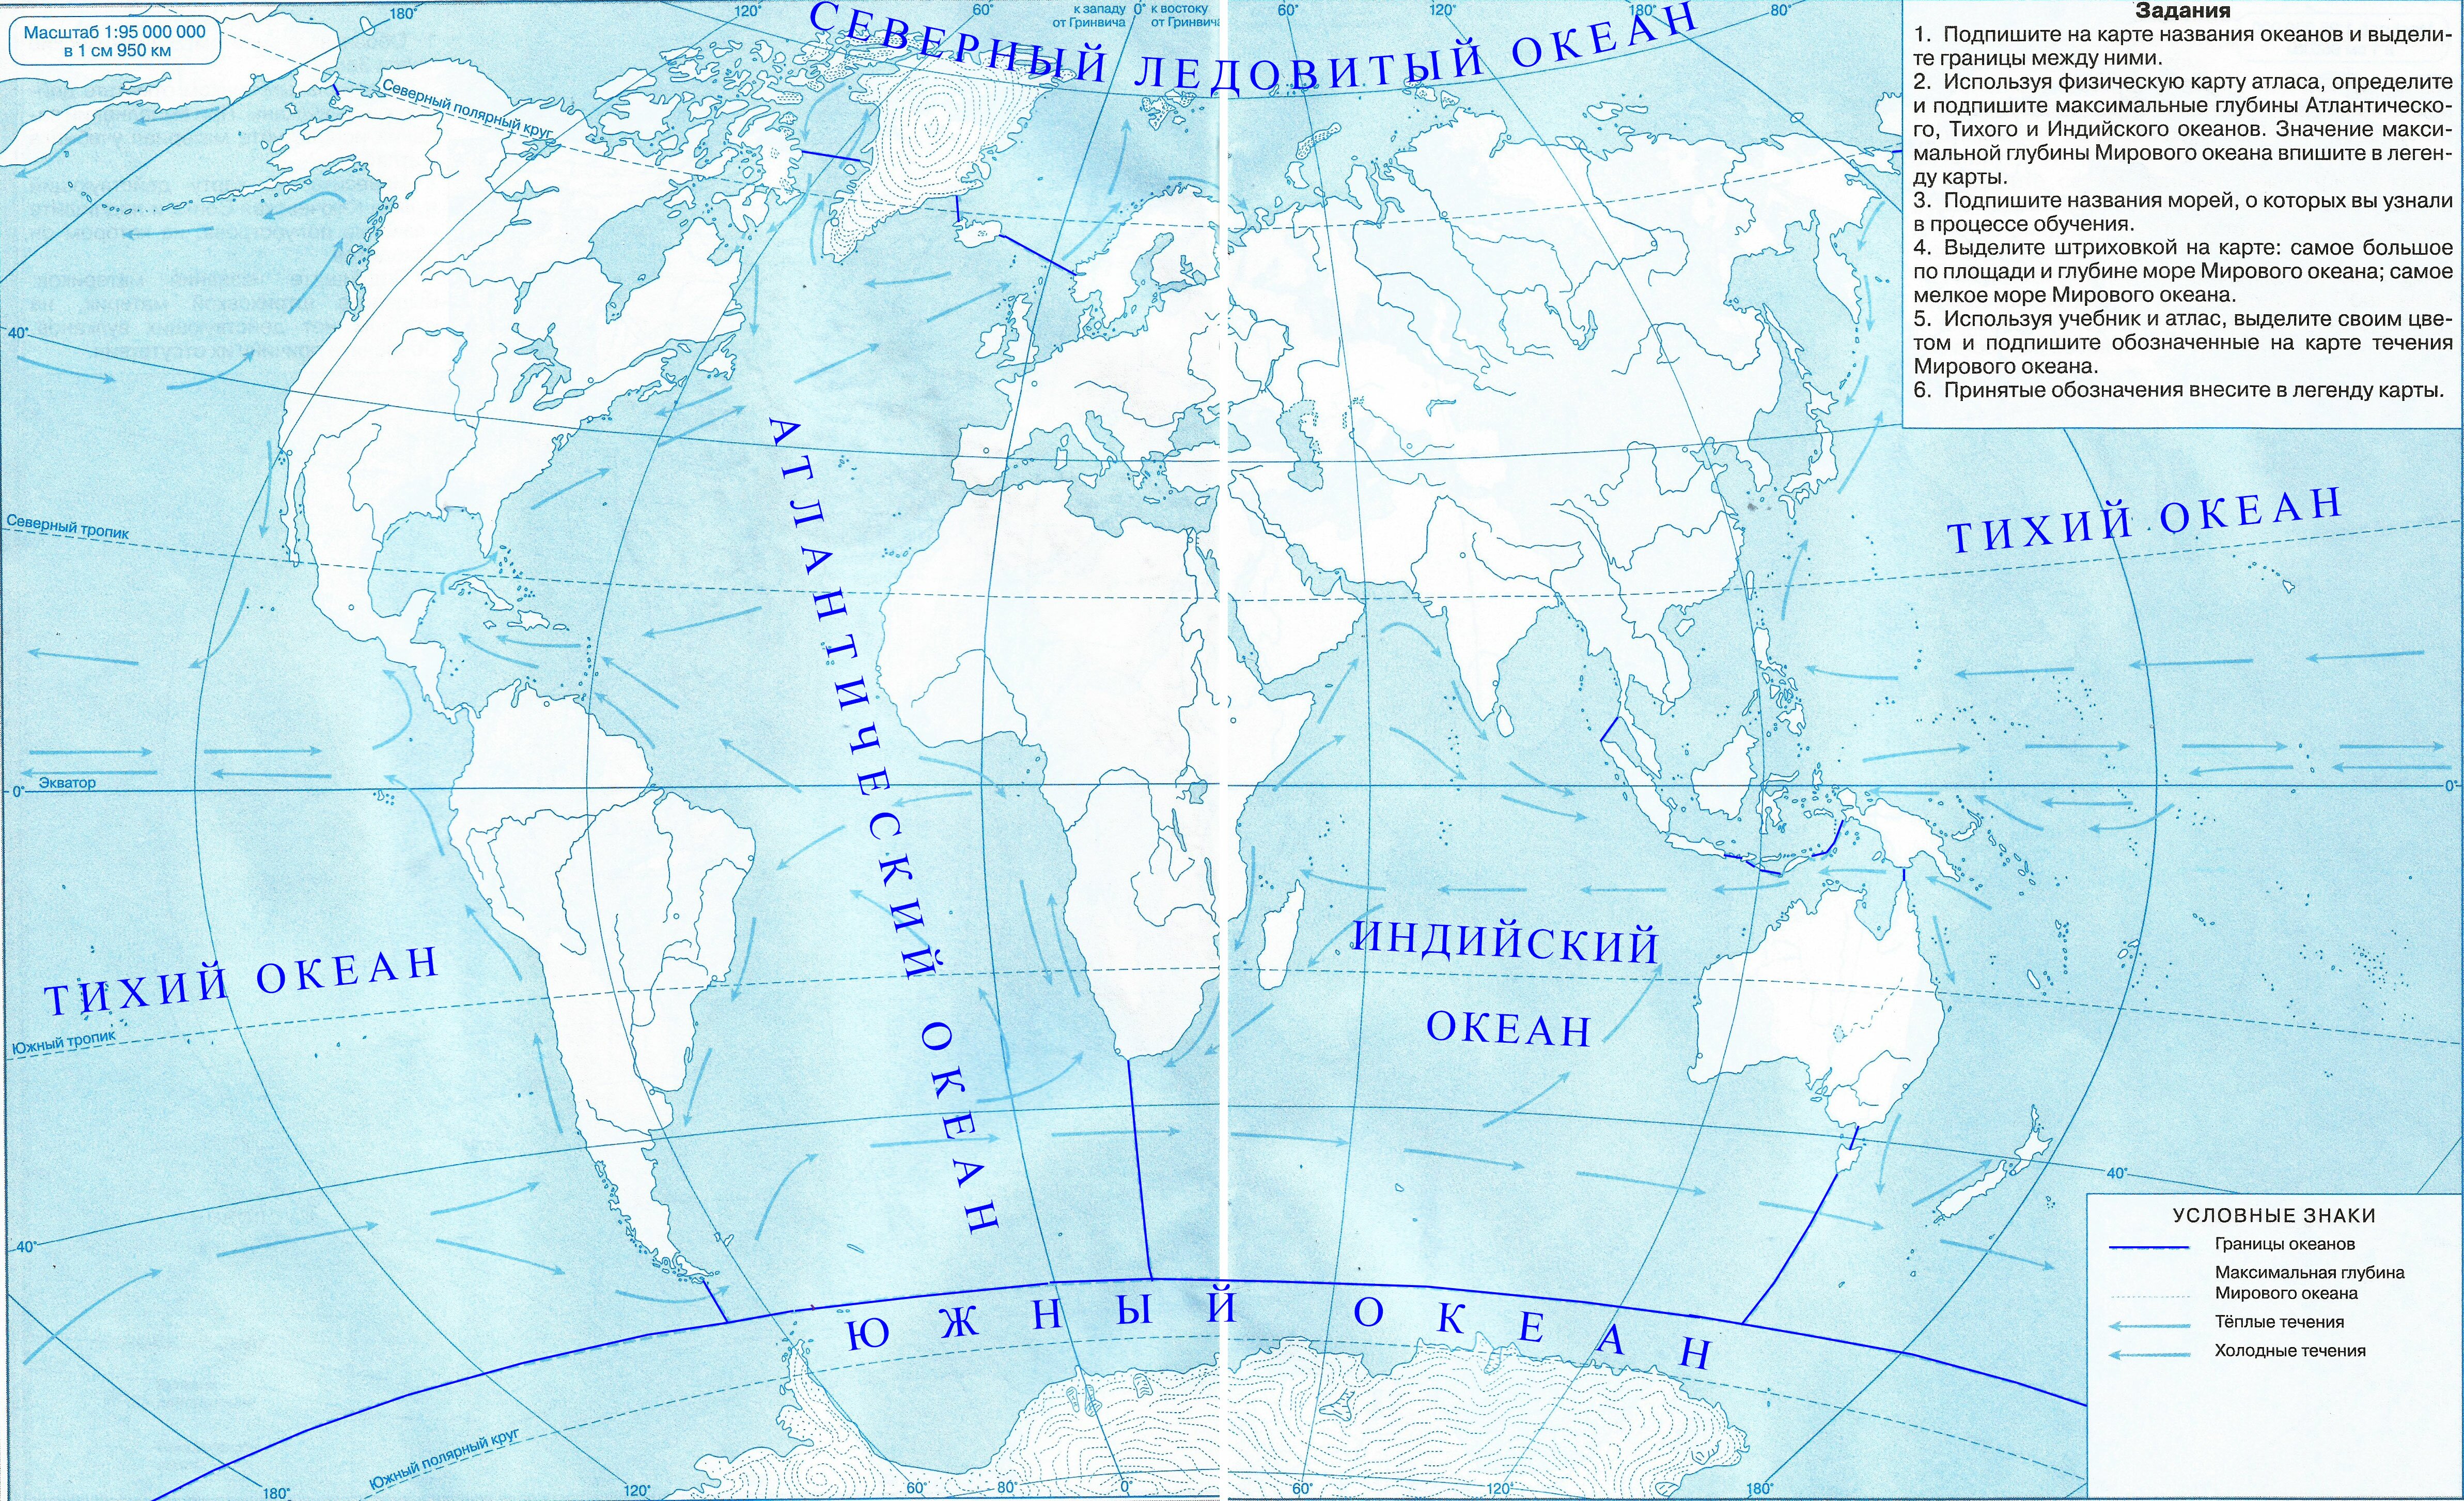 Конт карты 6 класс. Контурная карта Тихого океана. Контурная карта по географии 5 класс карта мирового океана. Максимальная глубина мирового океана на контурной карте. Мировой океан течения в океане атлас 6 класс.